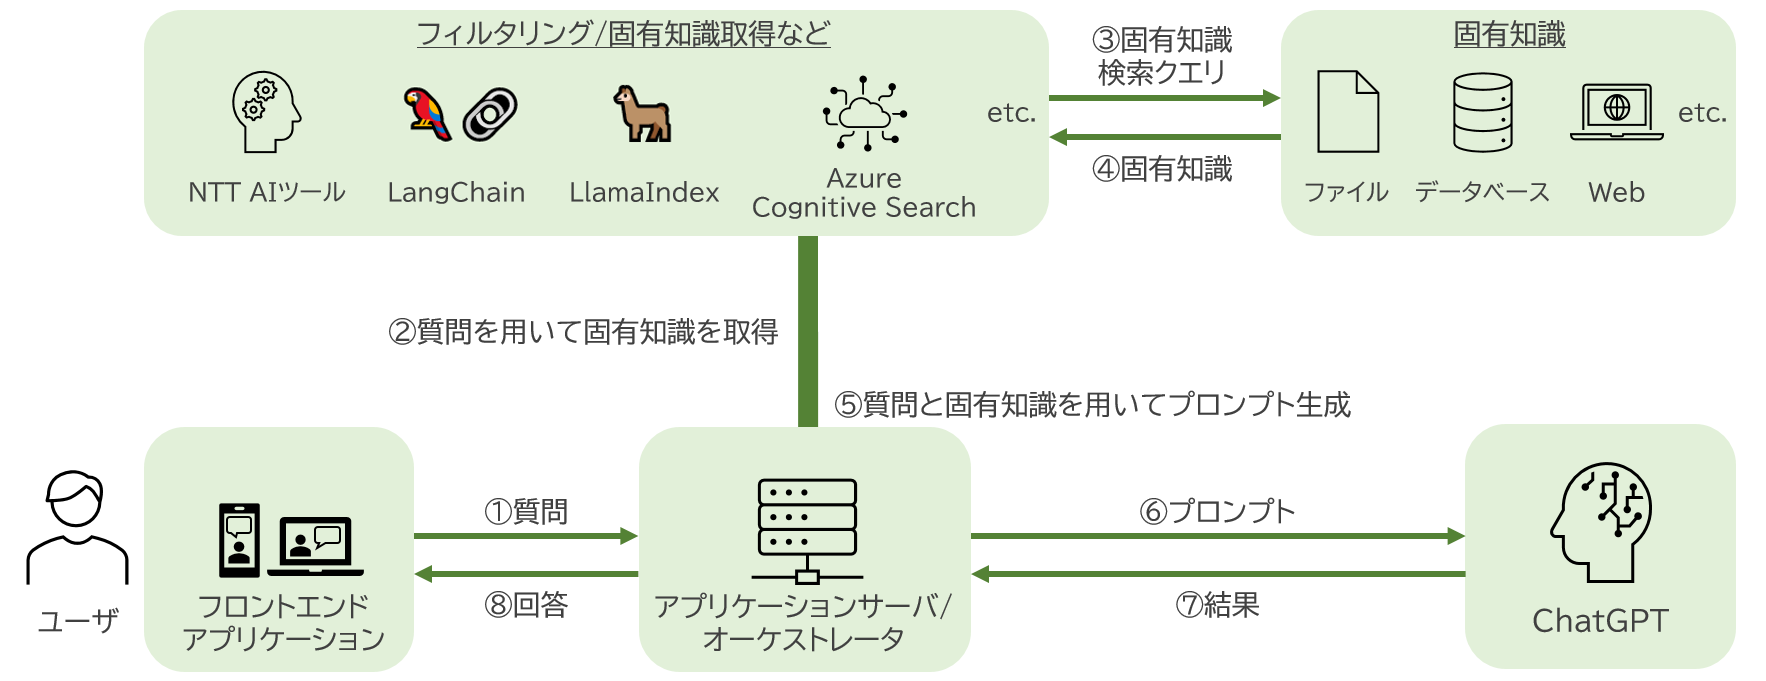 LLMカスタマイズサービスシステム構築イメージ